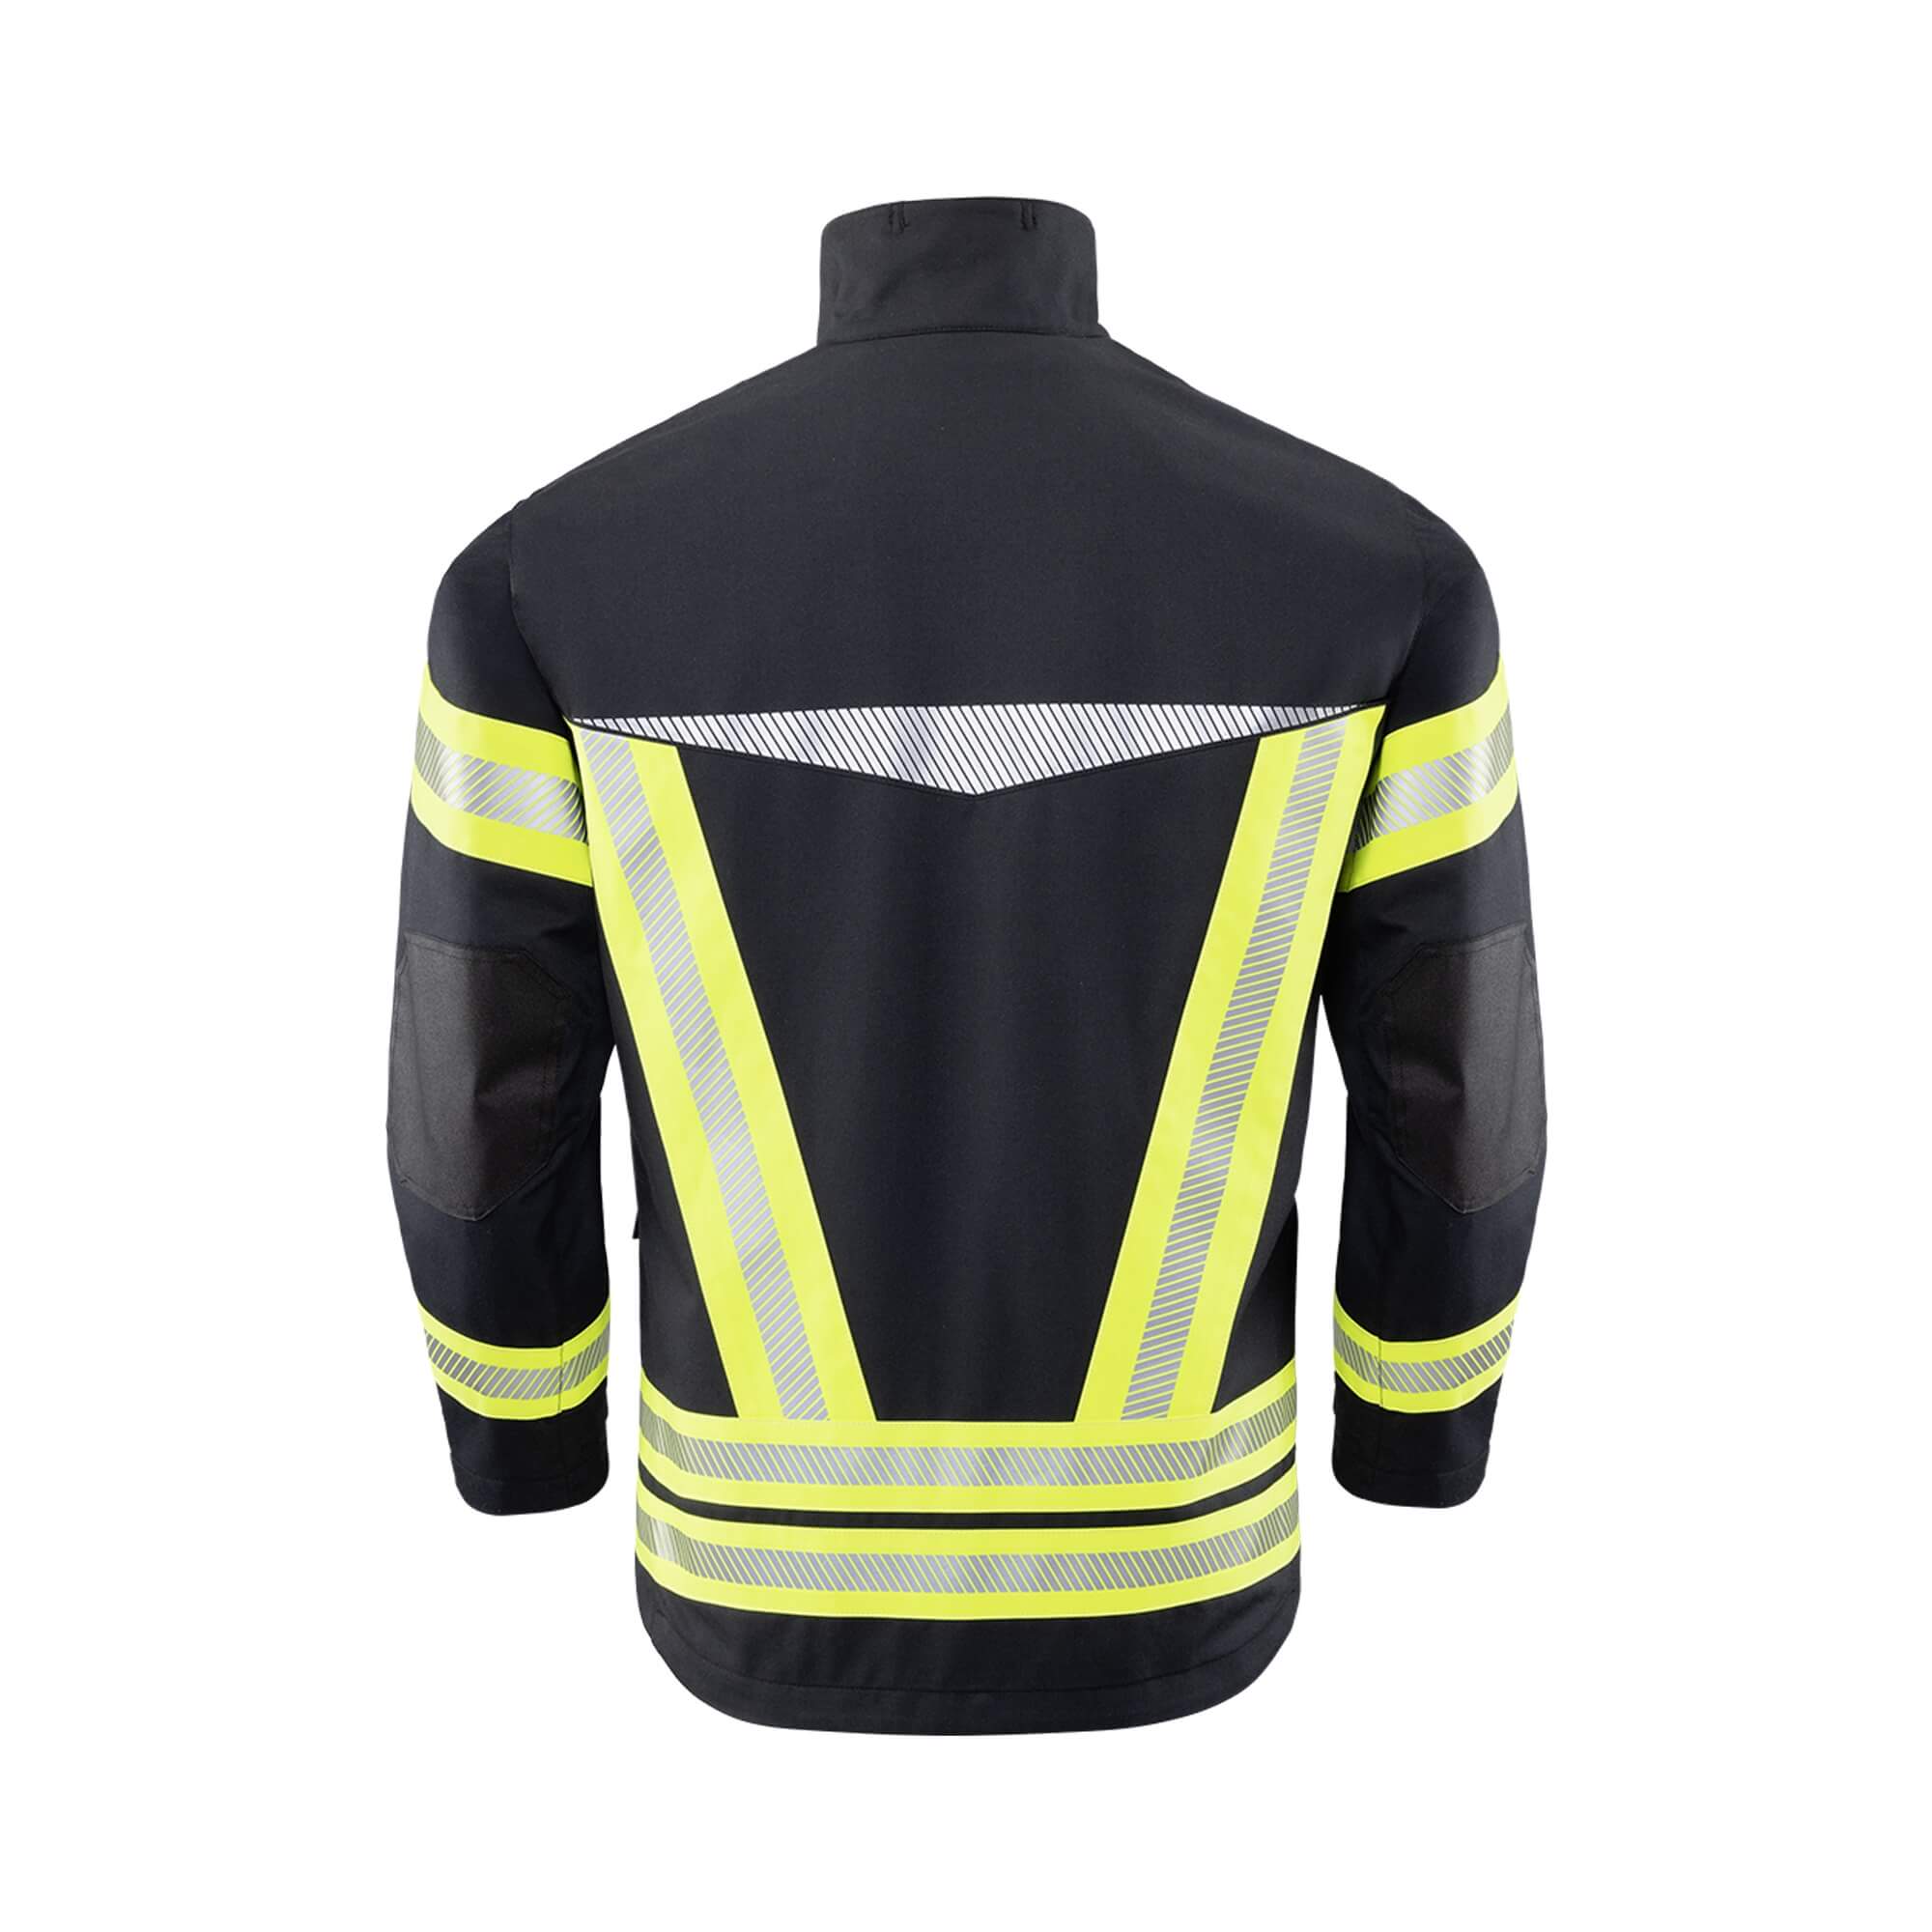 Interventno vatrogasno odijelo Texport Fire Inforcer